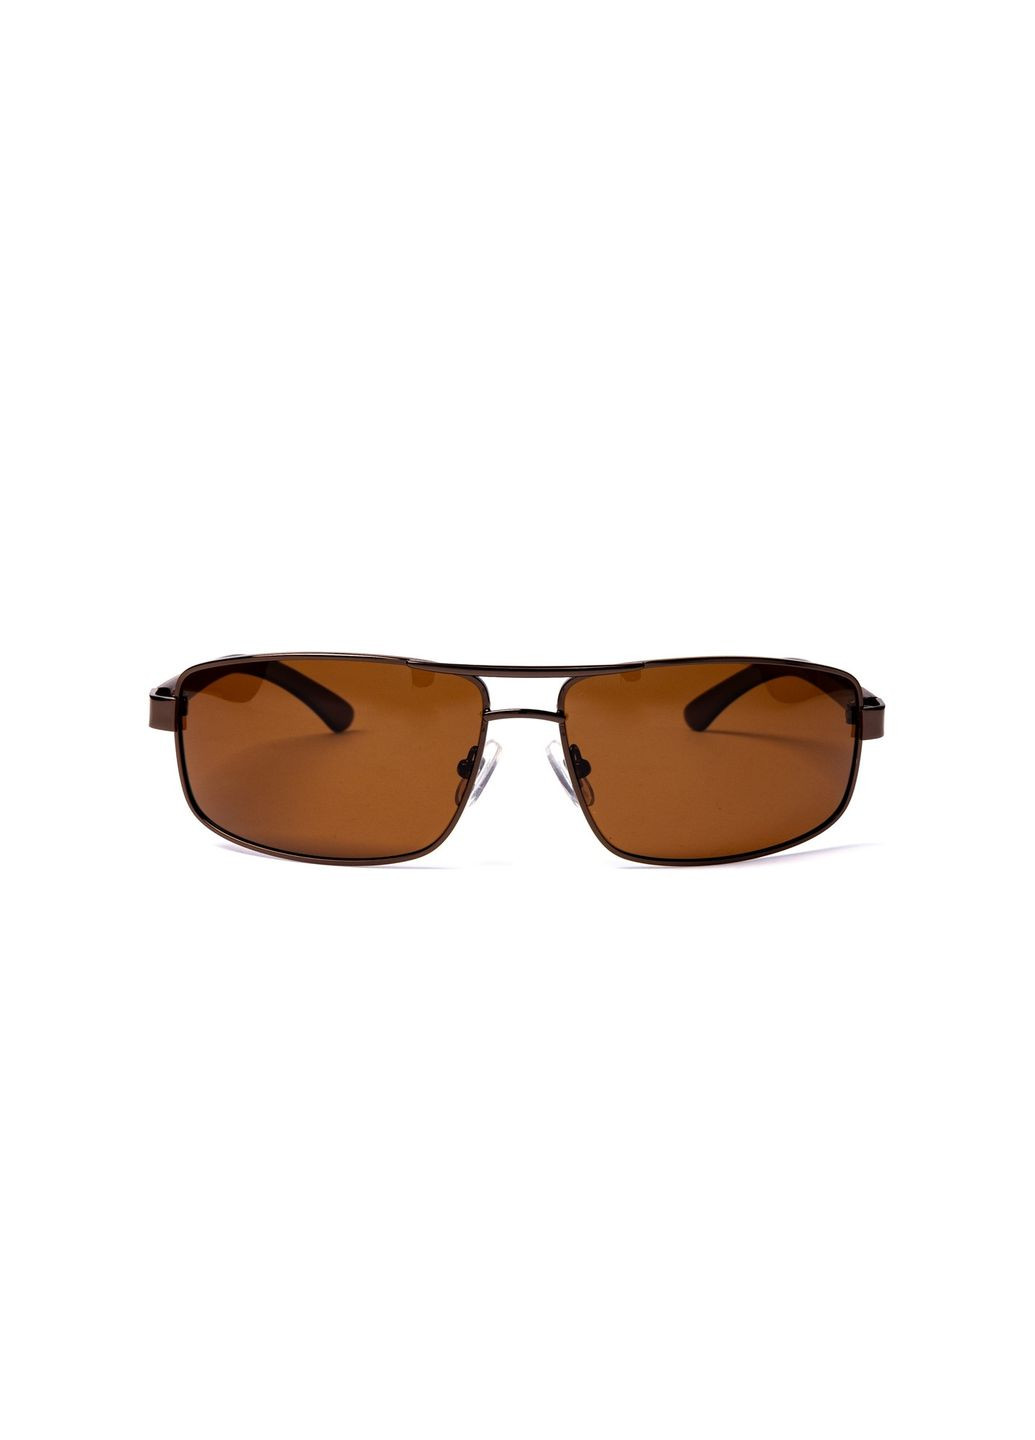 Солнцезащитные очки с поляризацией Классика мужские 383-593 LuckyLOOK 383-593m (289358805)